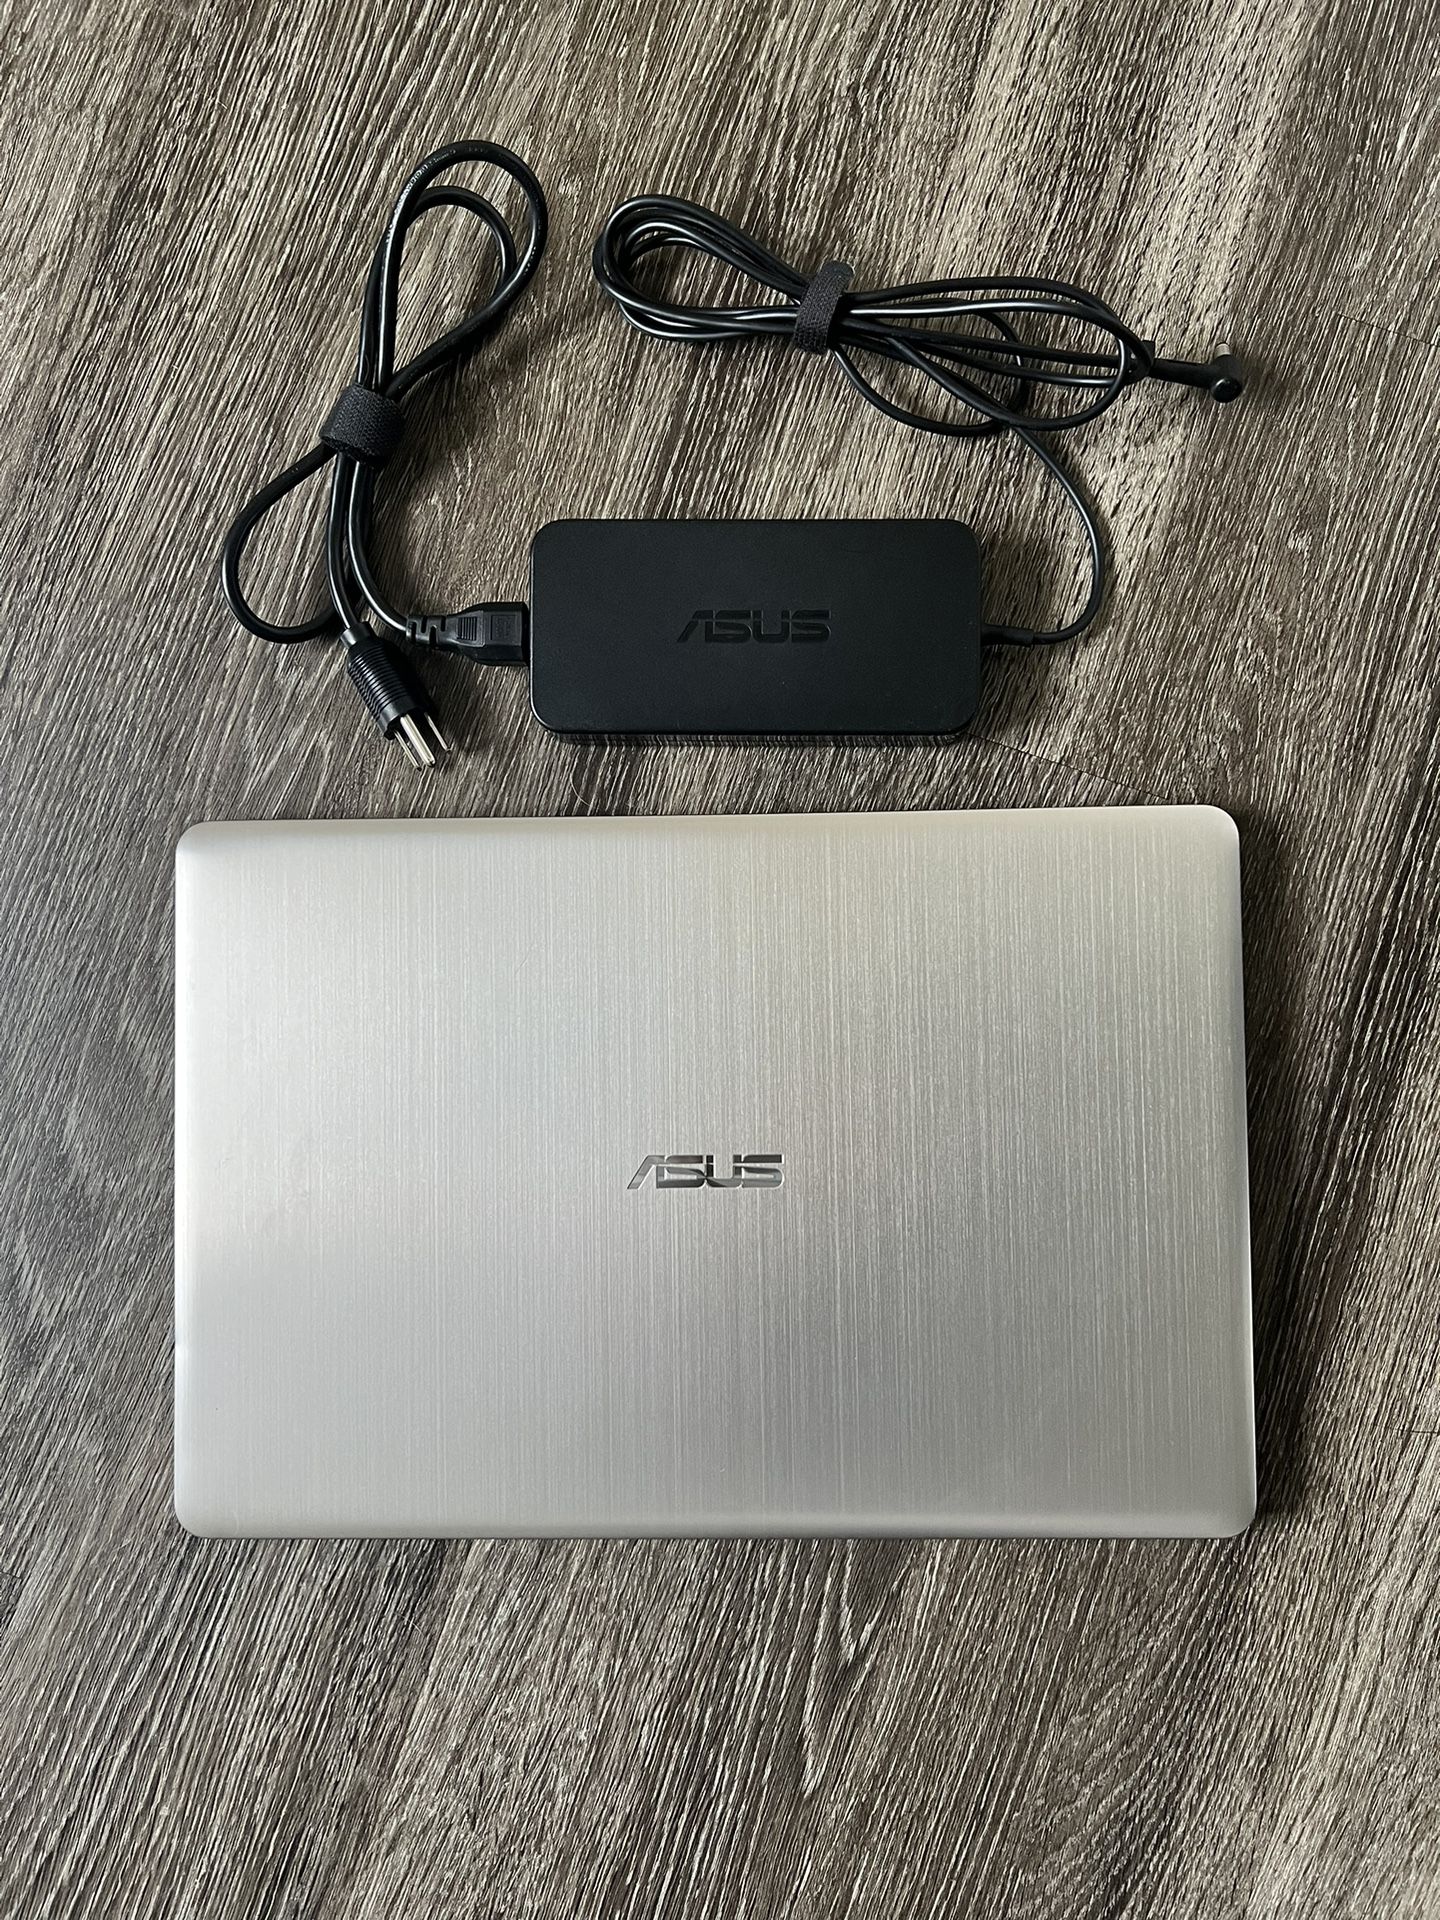 15.5” Asus Laptop